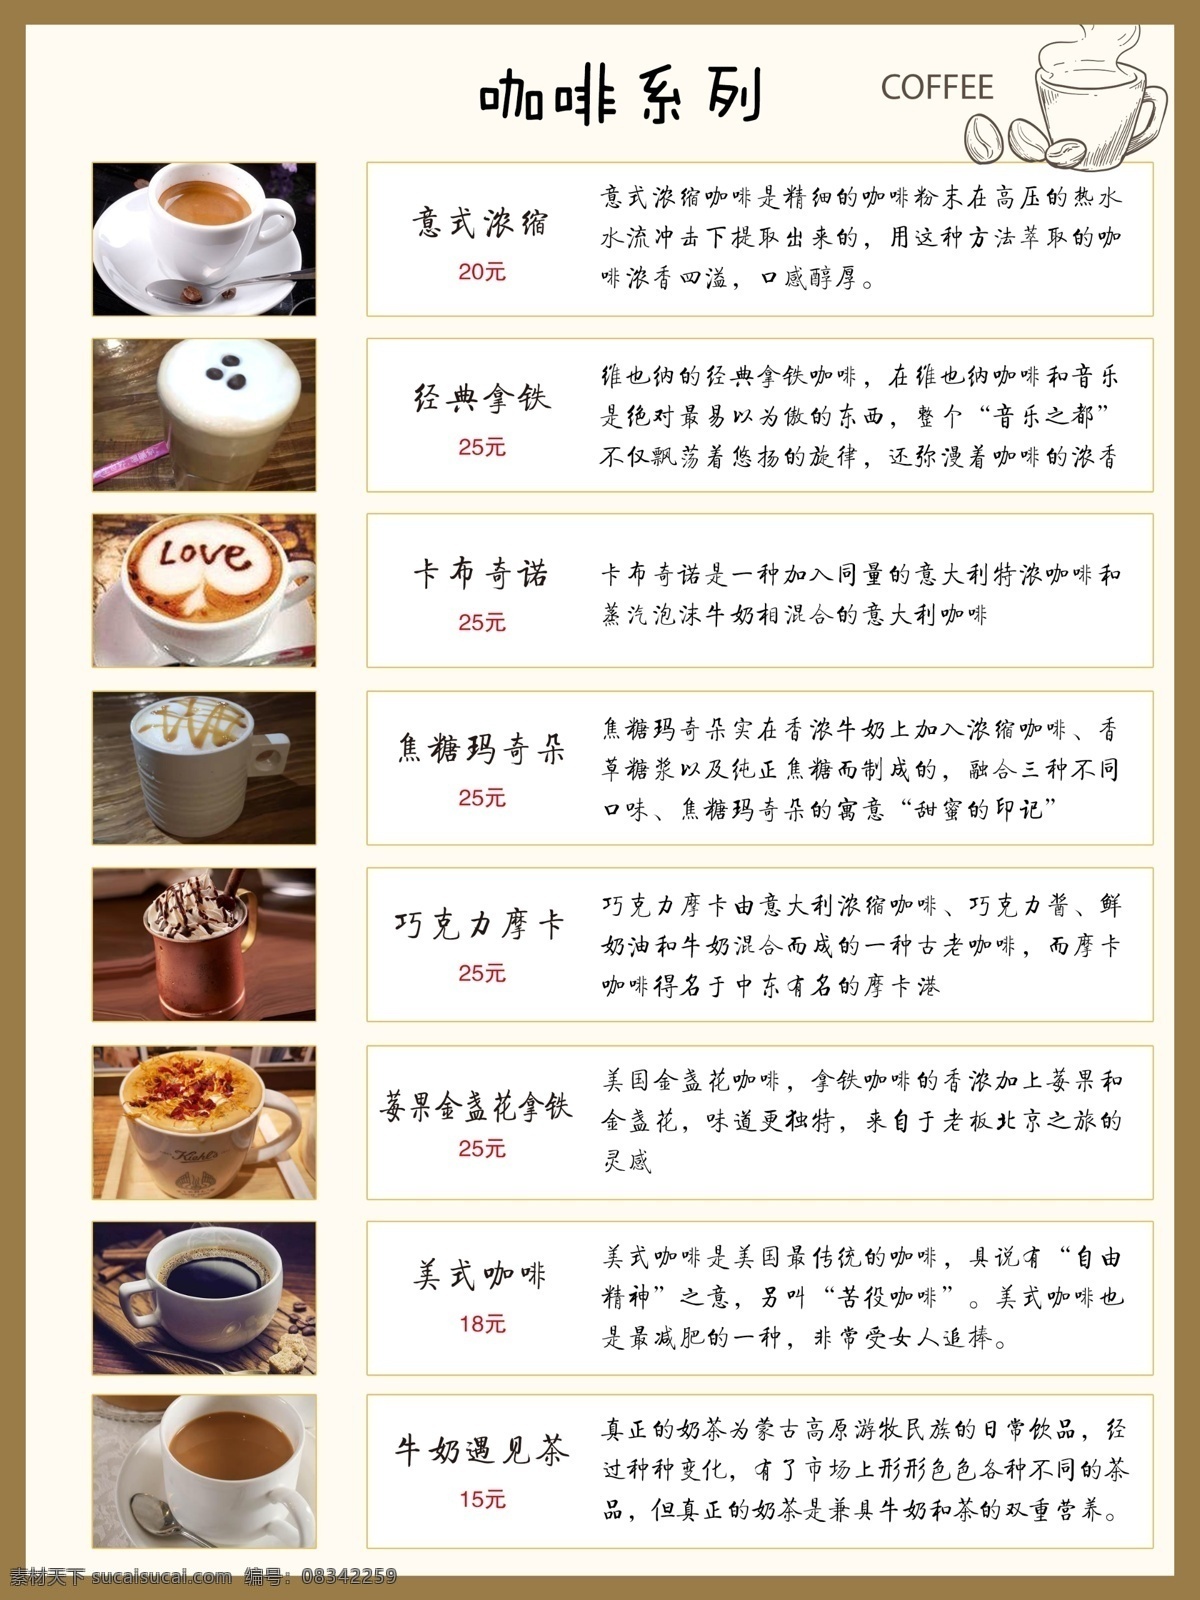 咖啡菜单 咖啡 菜单 价格表 香浓咖啡 咖啡店 生活百科 餐饮美食